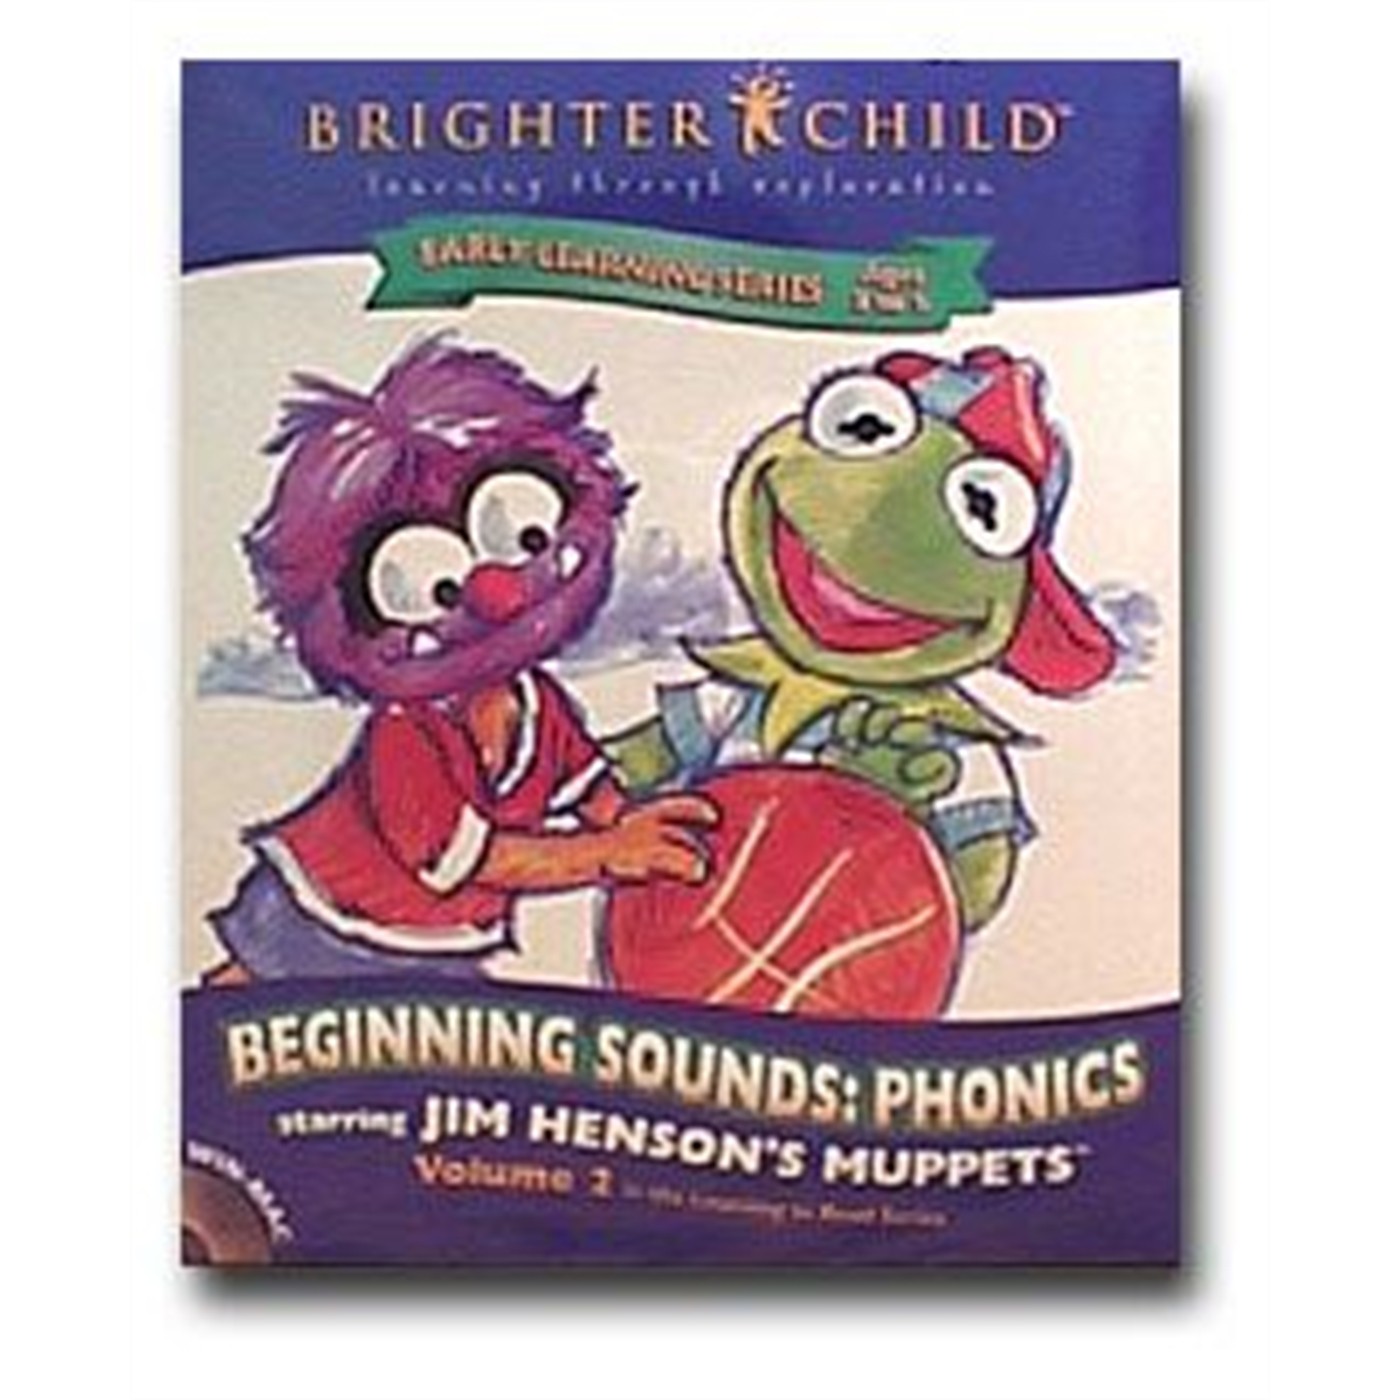 Muppets Software: Beginning Sounds: Phonics